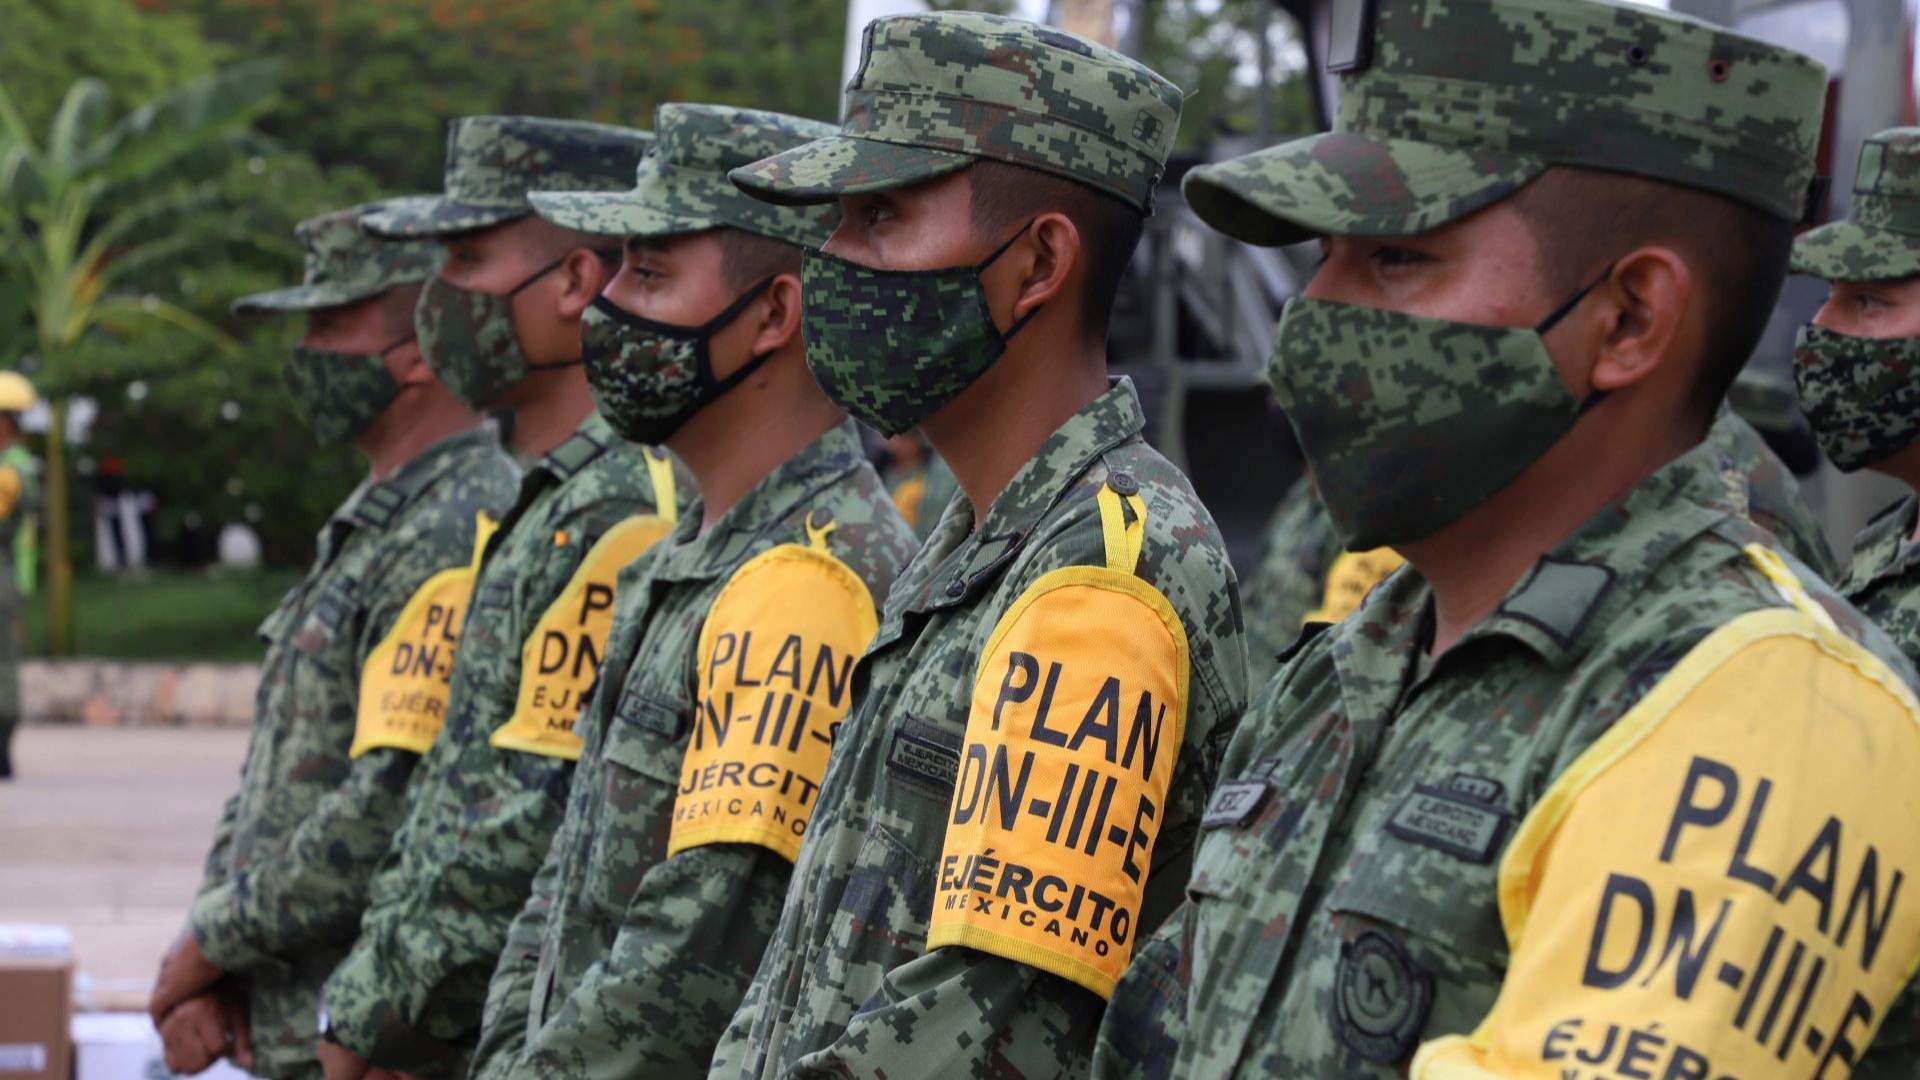 Se suman más de 200 soldados al Plan DN-III-E implementado tras Otis en Acapulco